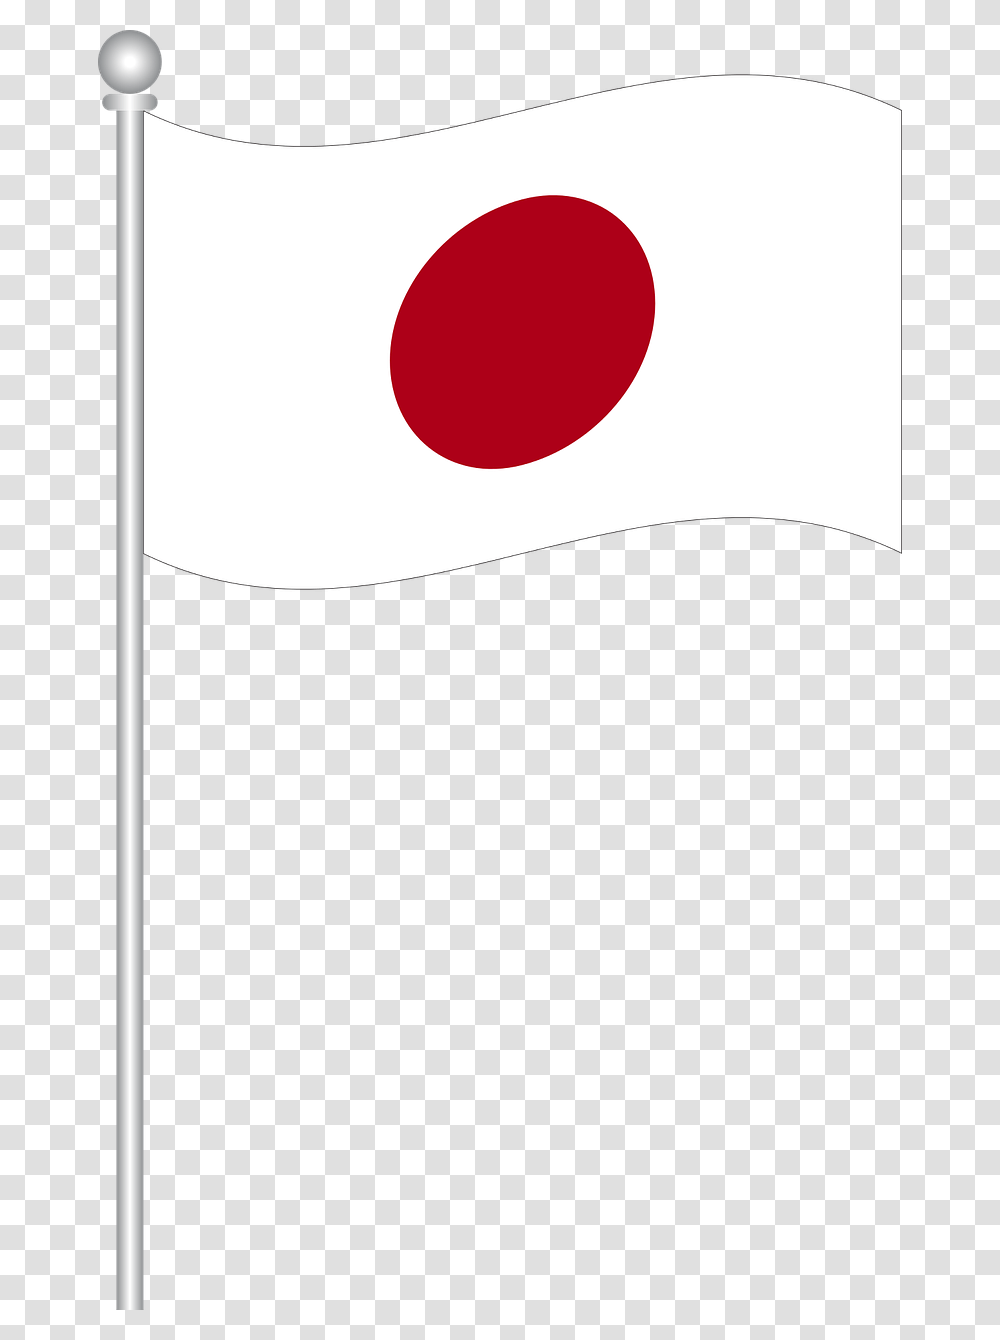 Bendera Jepang, Electronics, Phone, Mobile Phone Transparent Png